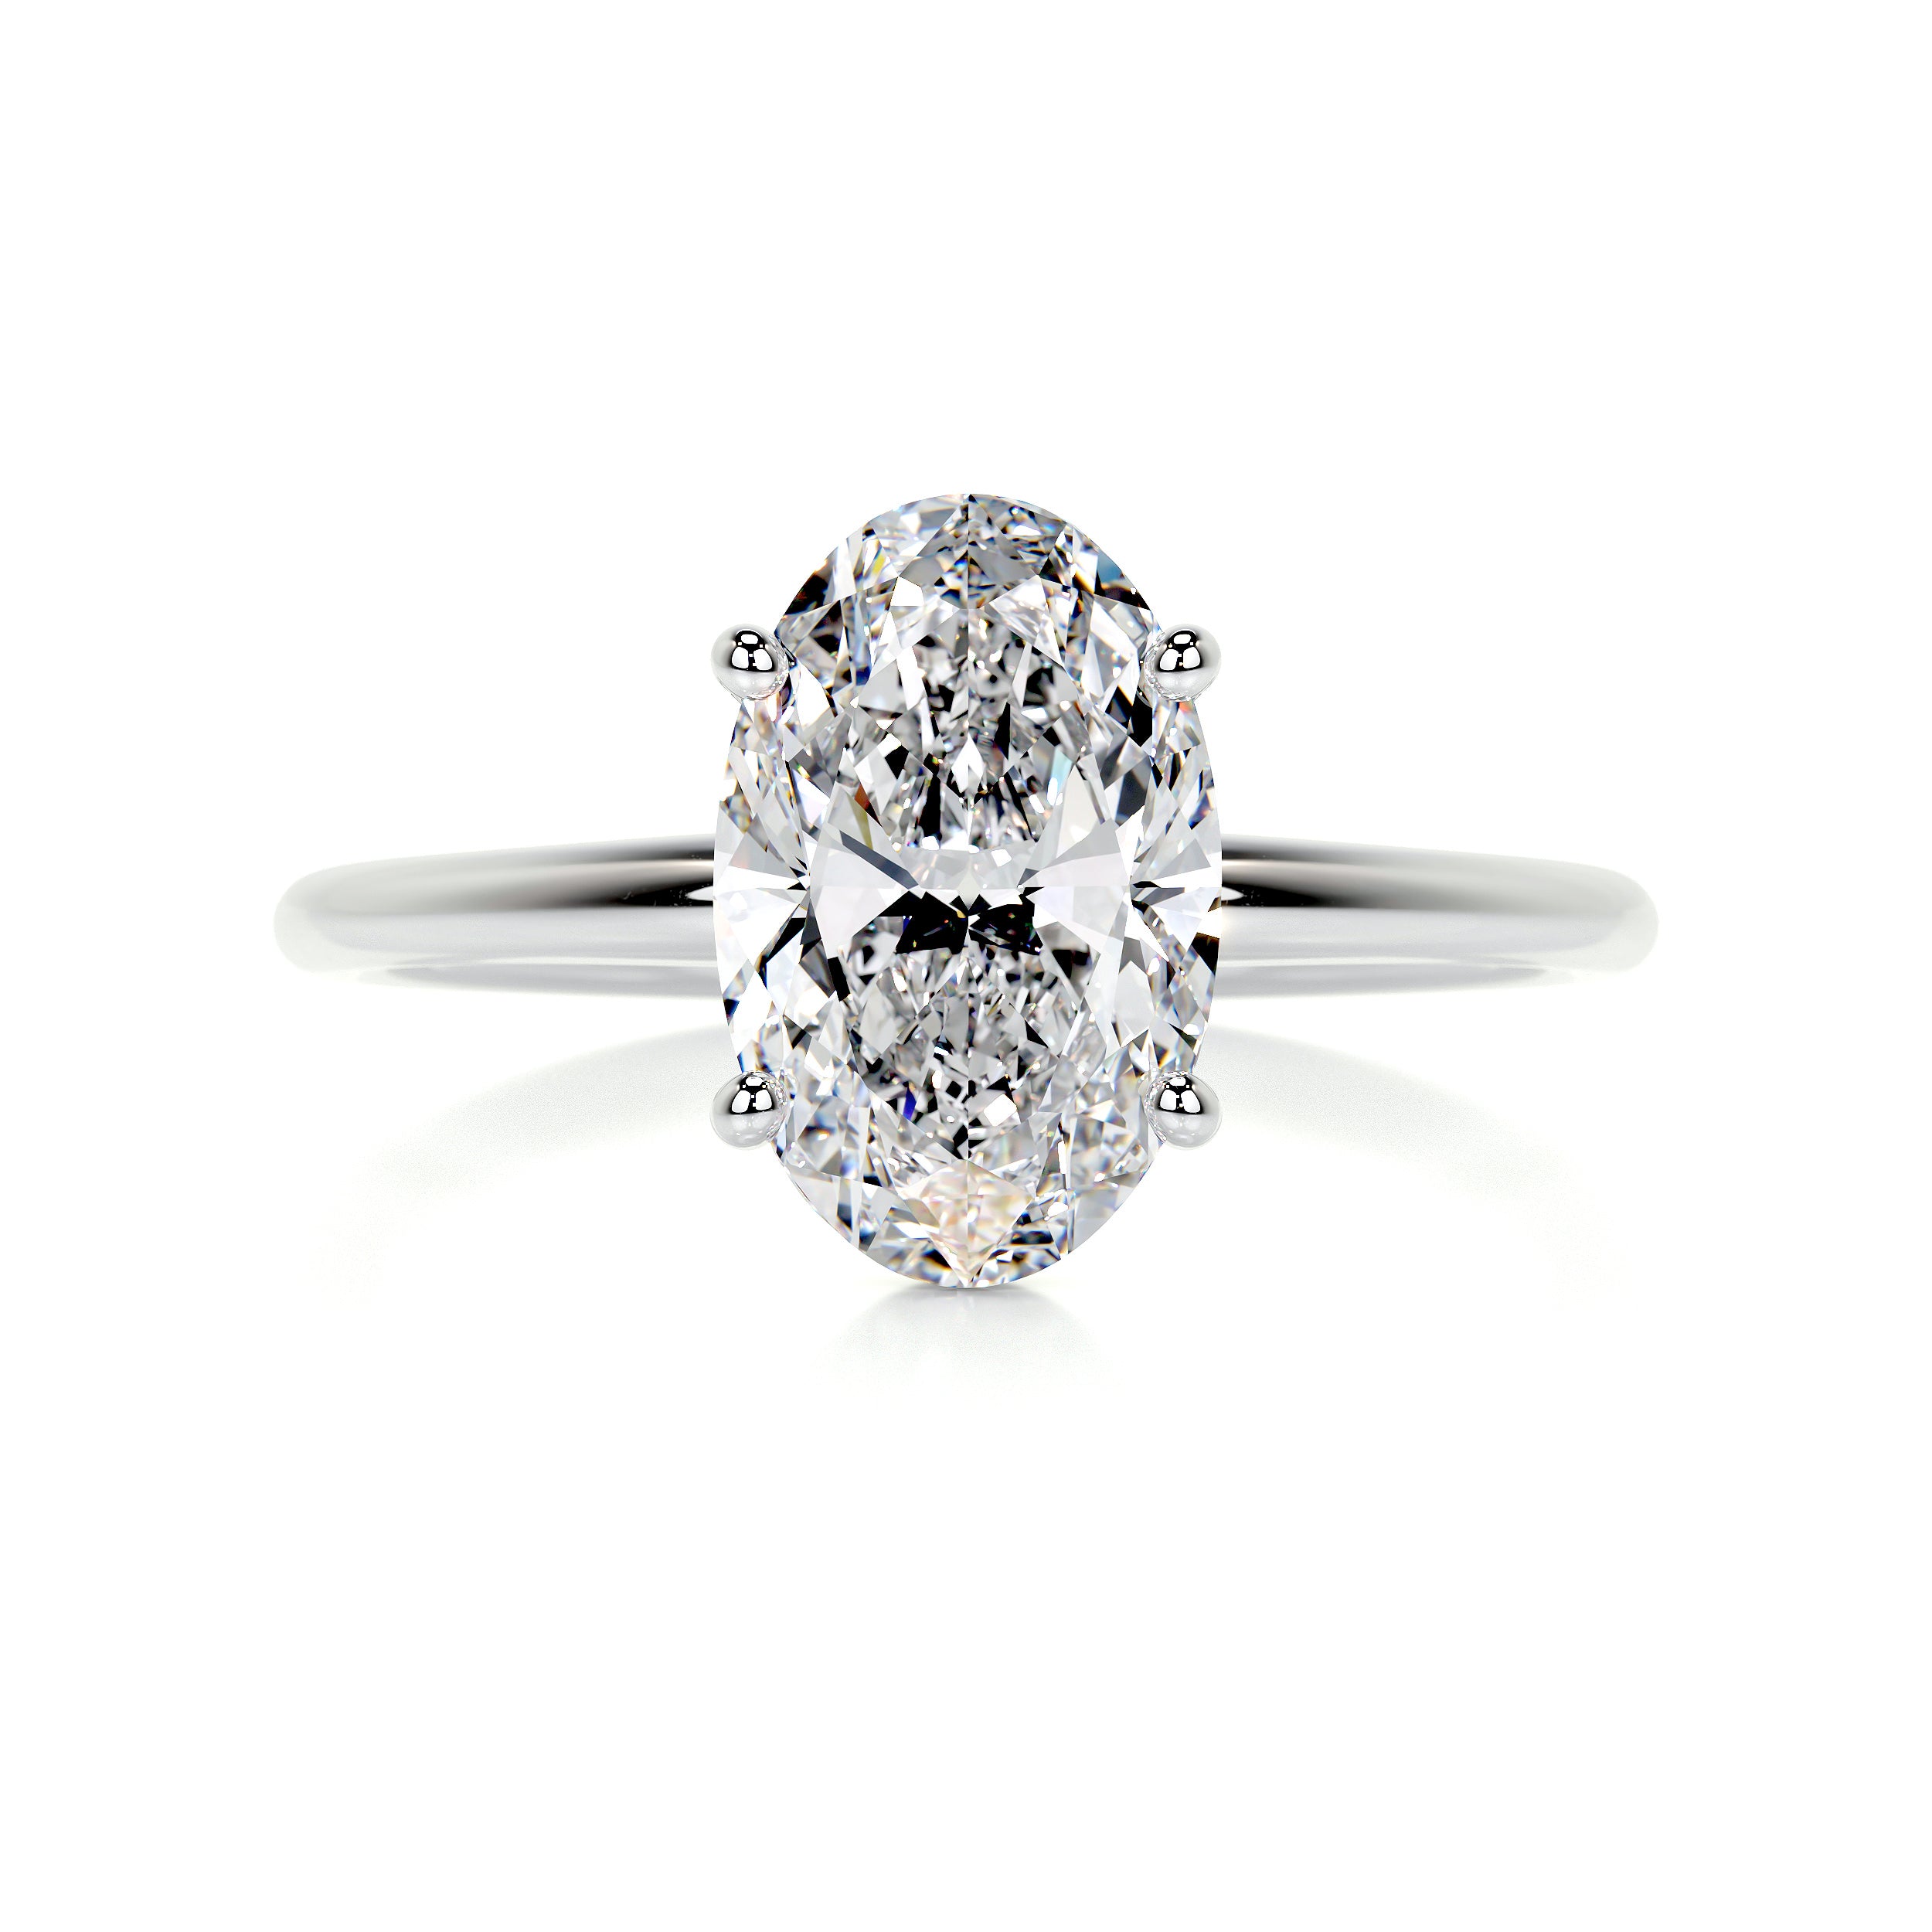 Adaline Diamond Engagement Ring   (2 Carat) -14K White Gold